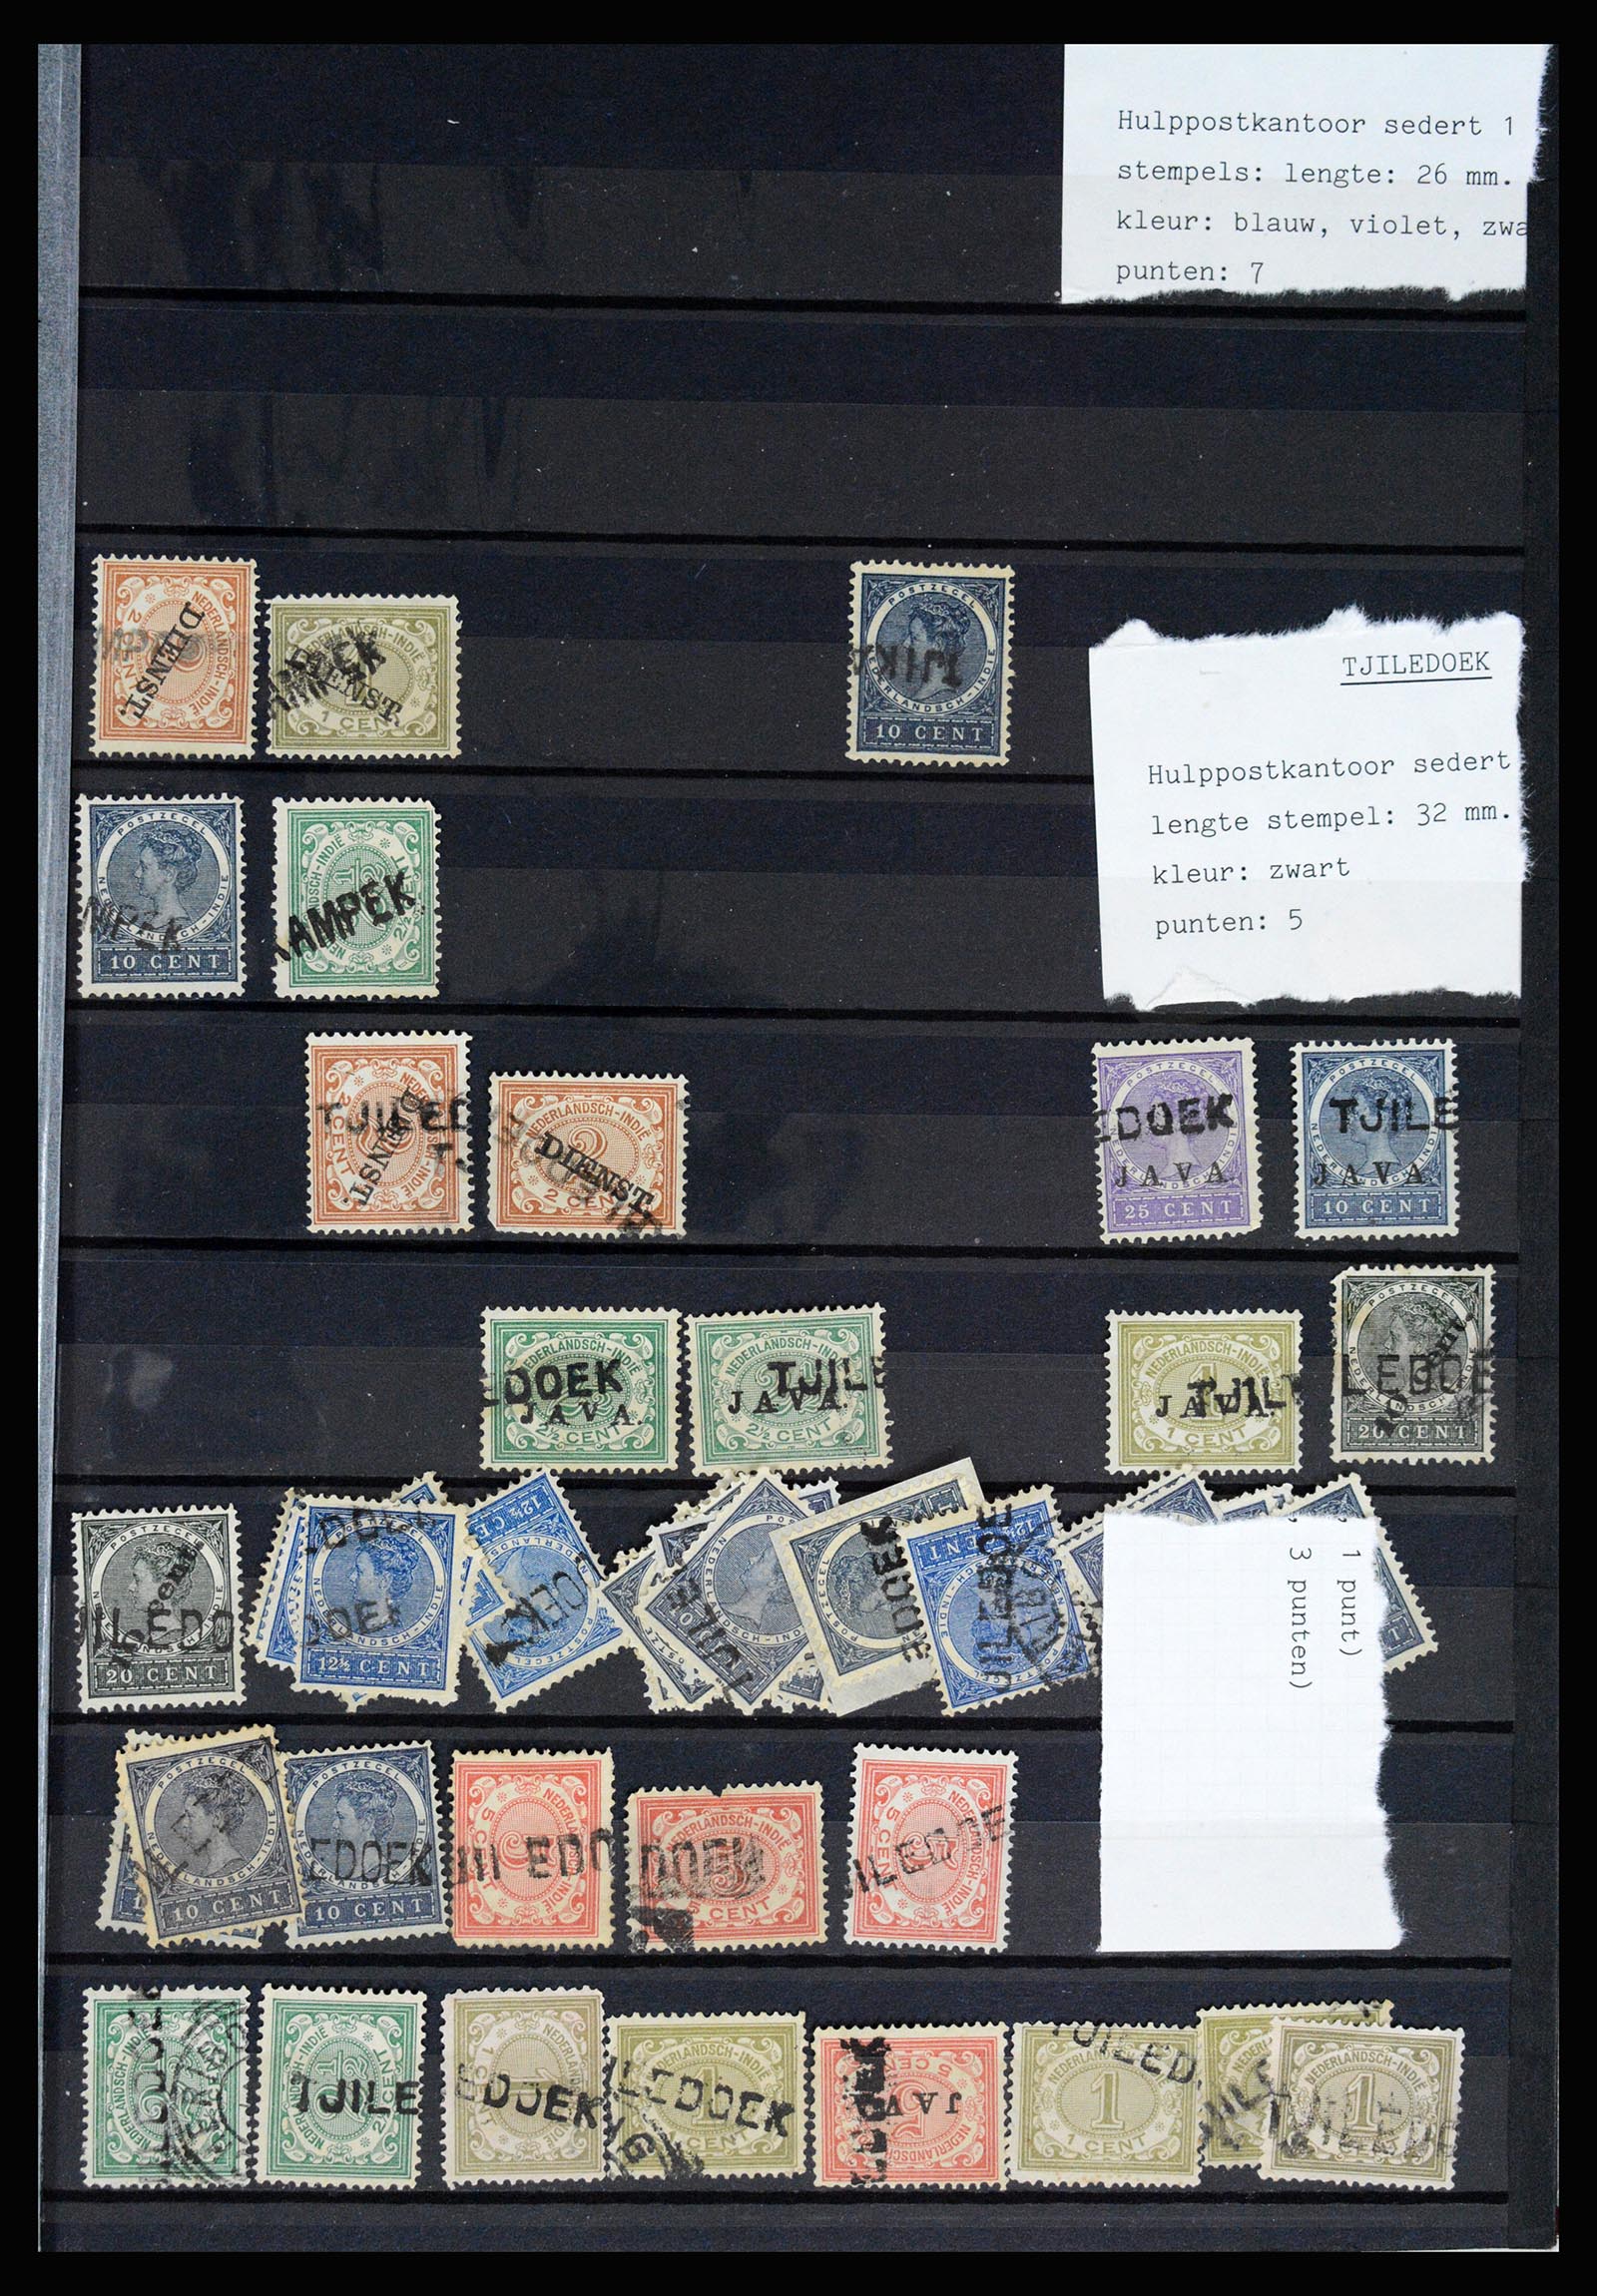 36512 073 - Stamp collection 36512 Nederlands Indië stempels 1872-1930.